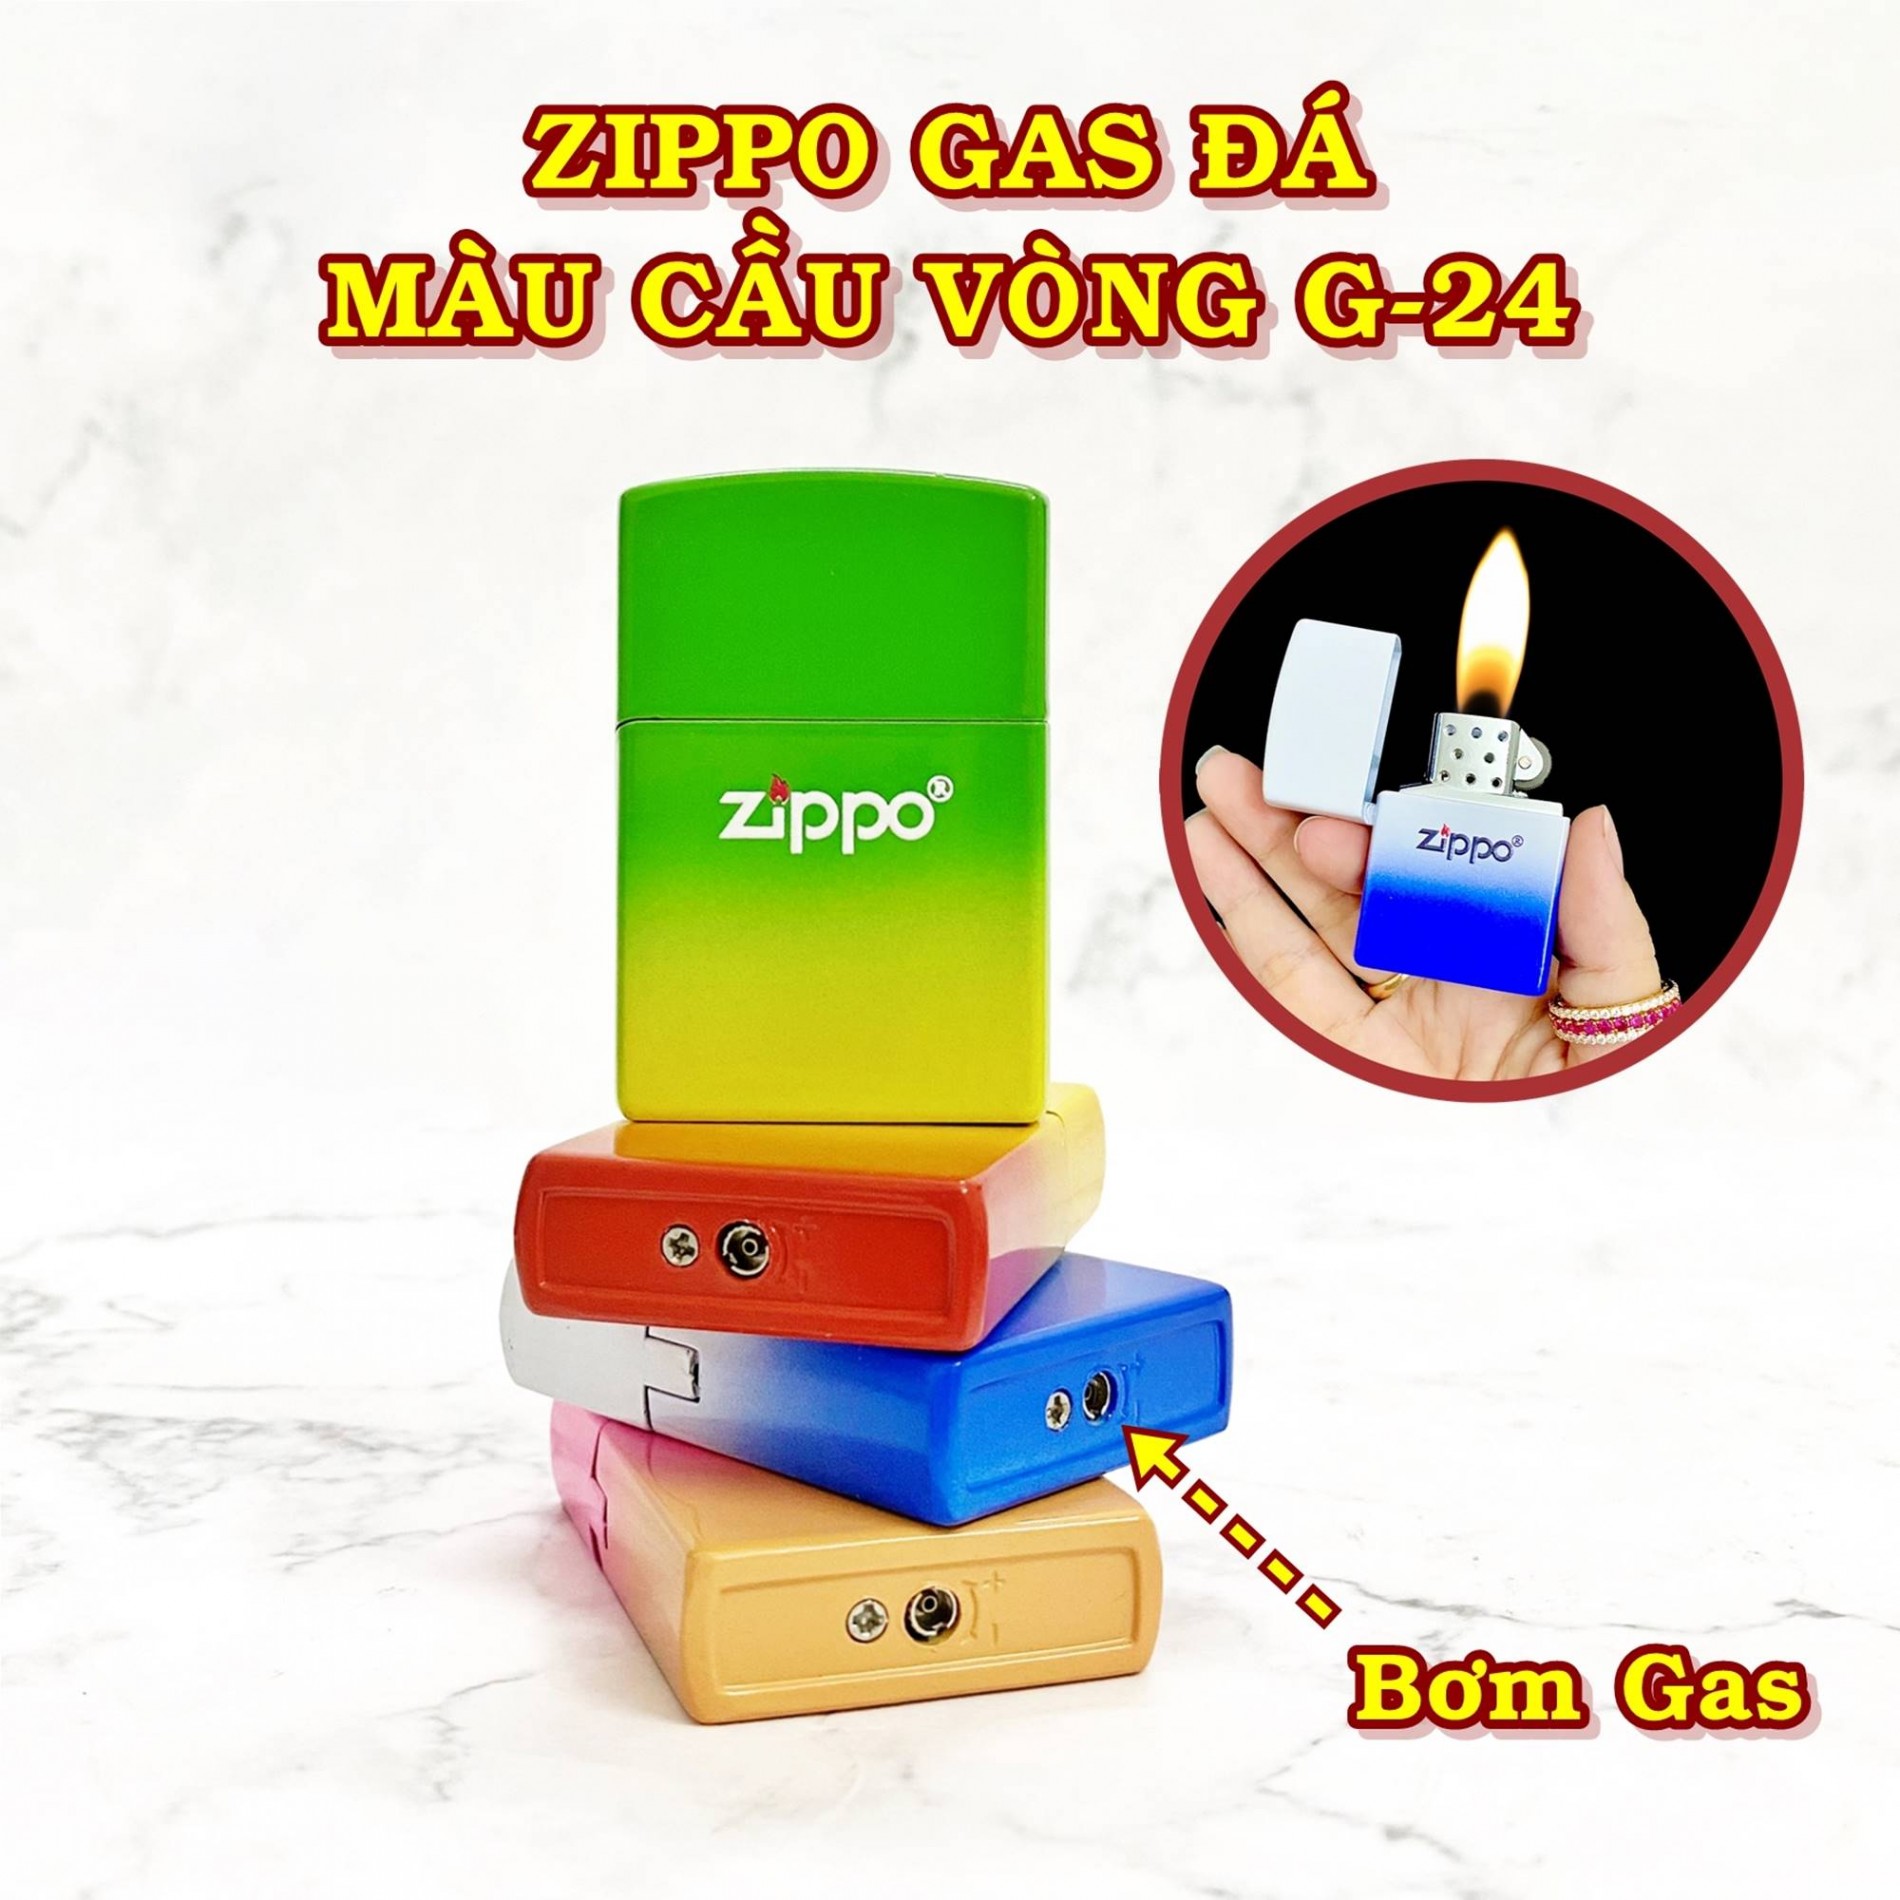 zippo_gas_da_mau_cau_vong_3